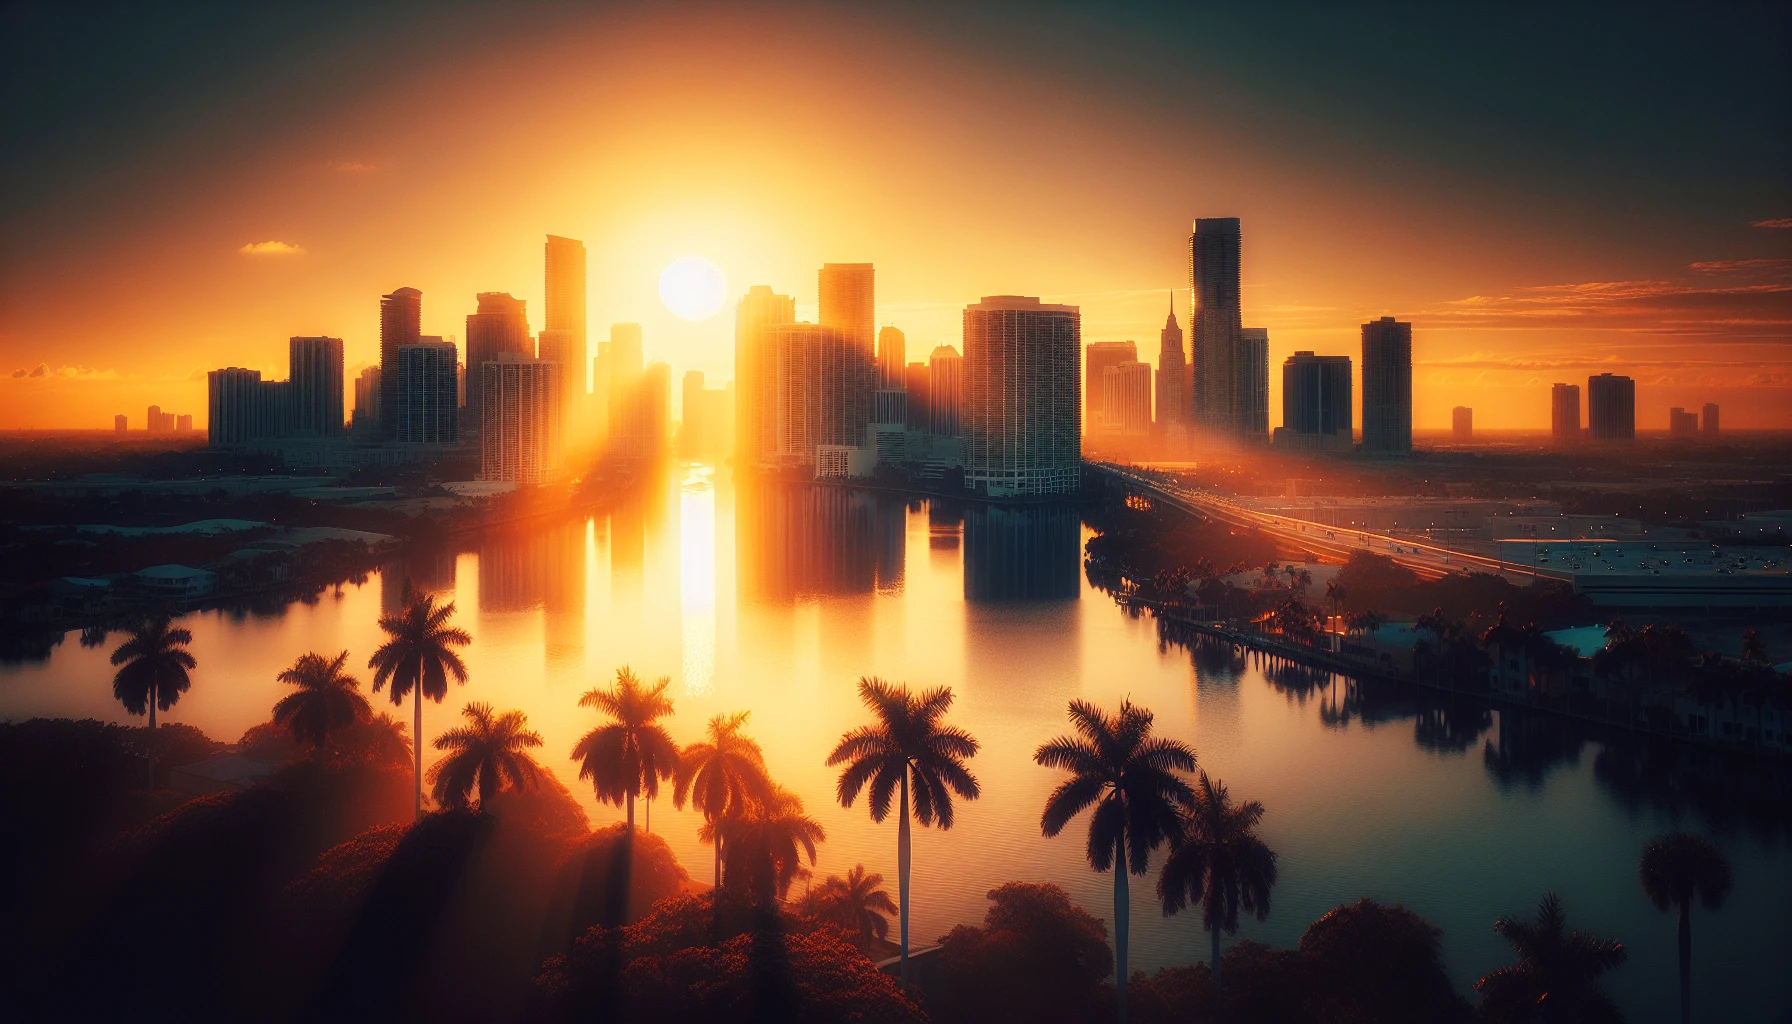 Sunrise, Florida city skyline at sunrise